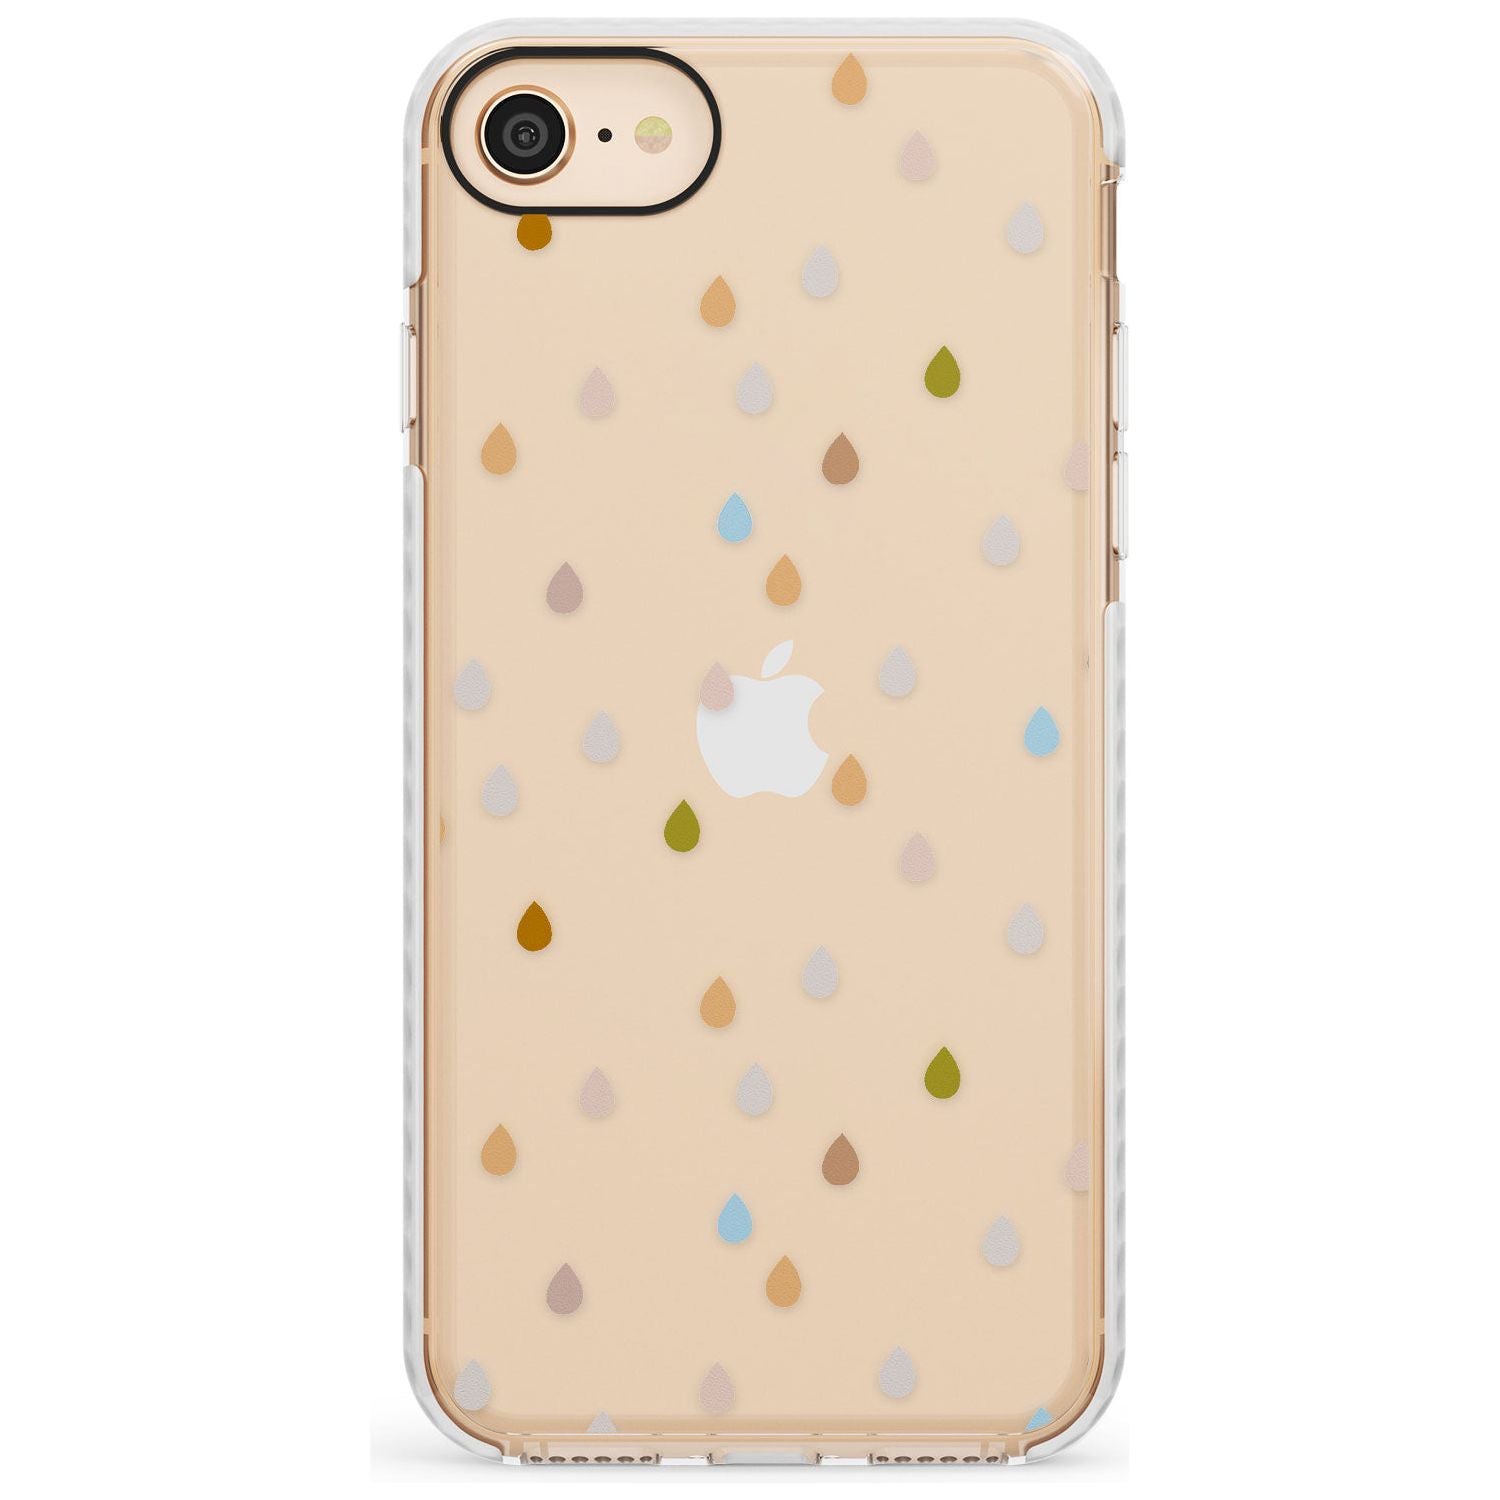 Raindrops Slim TPU Phone Case for iPhone SE 8 7 Plus